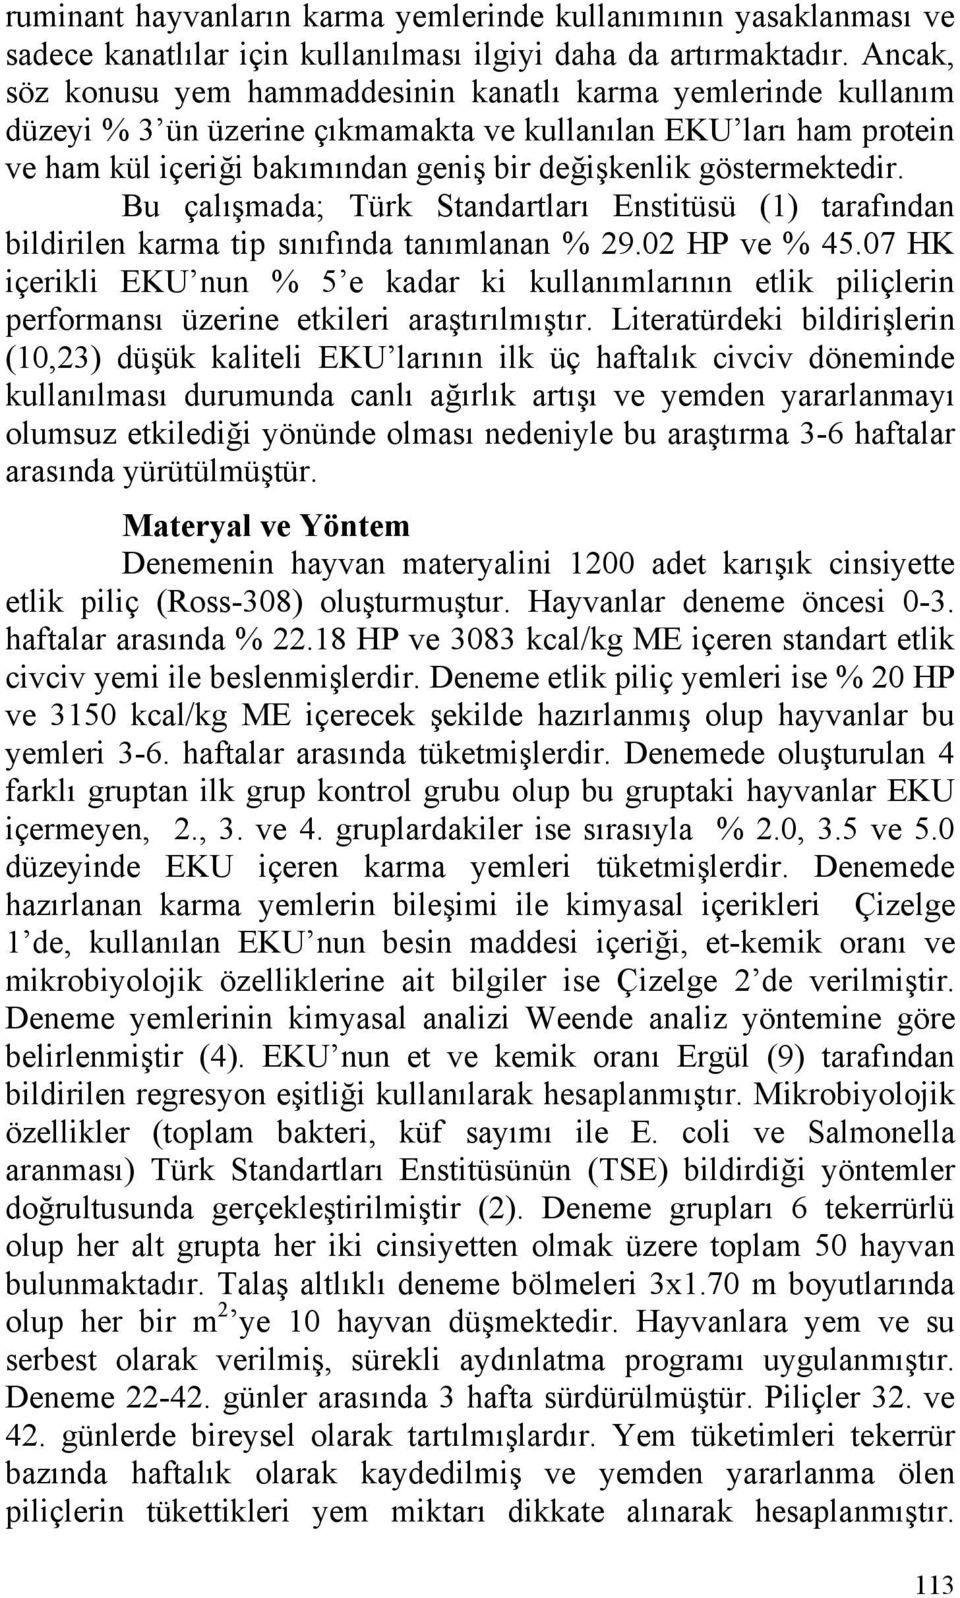 göstermektedir. Bu çalışmada; Türk Standartları Enstitüsü (1) tarafından bildirilen karma tip sınıfında tanımlanan % 29.02 HP ve % 45.